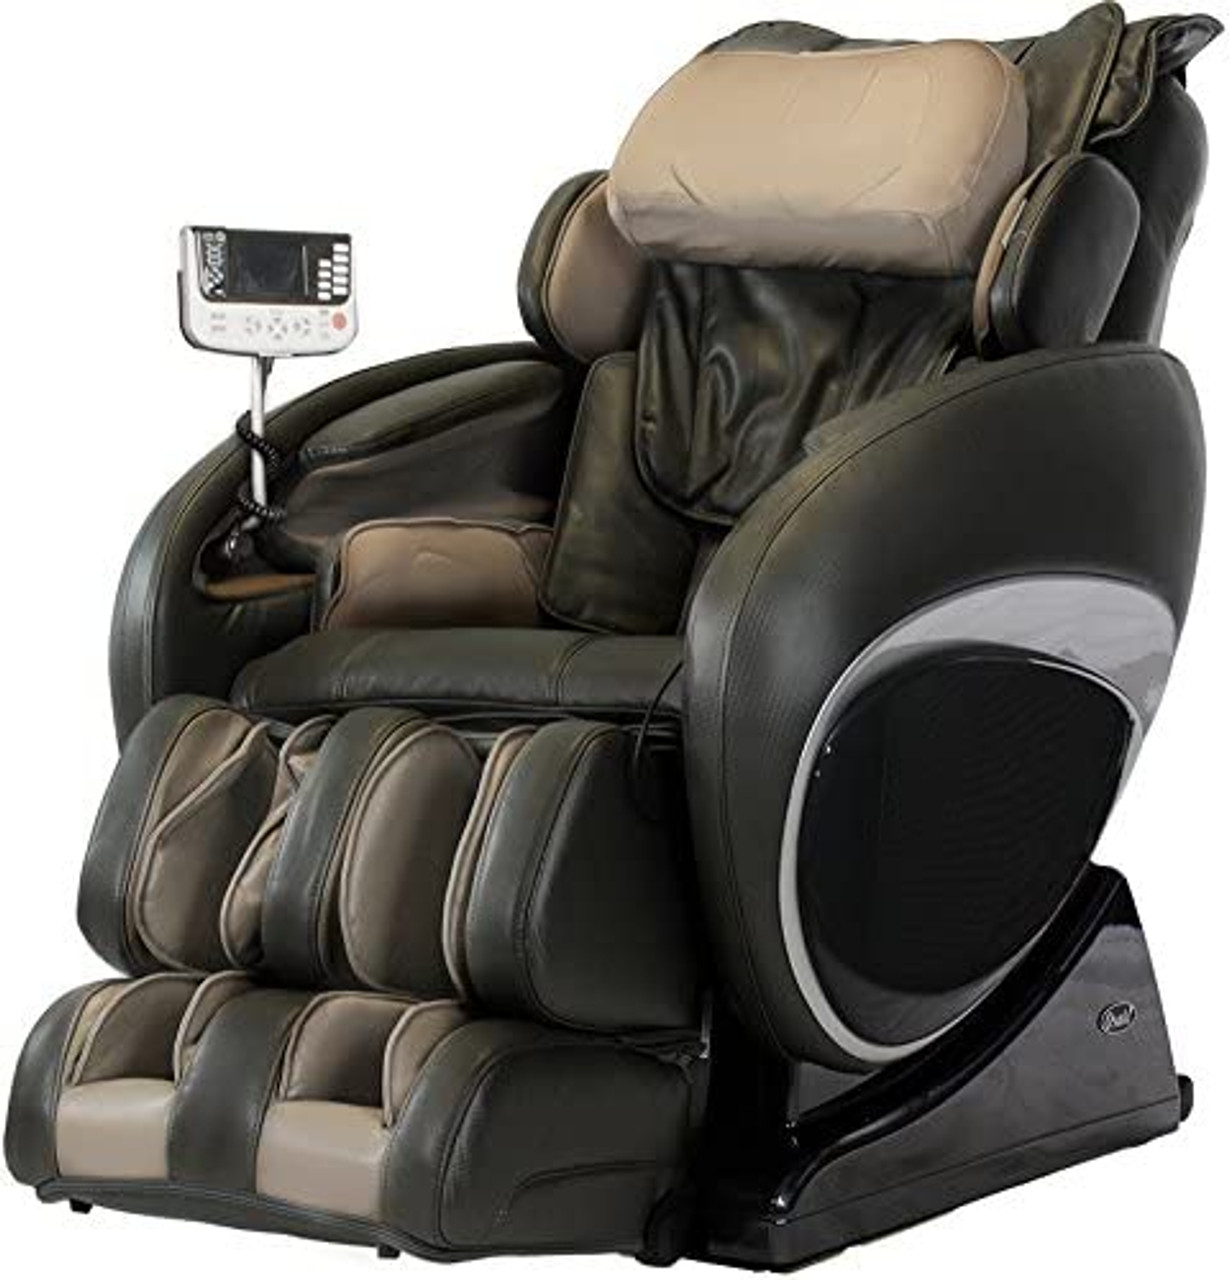 OS-4000T Massage Chairs by Osaki